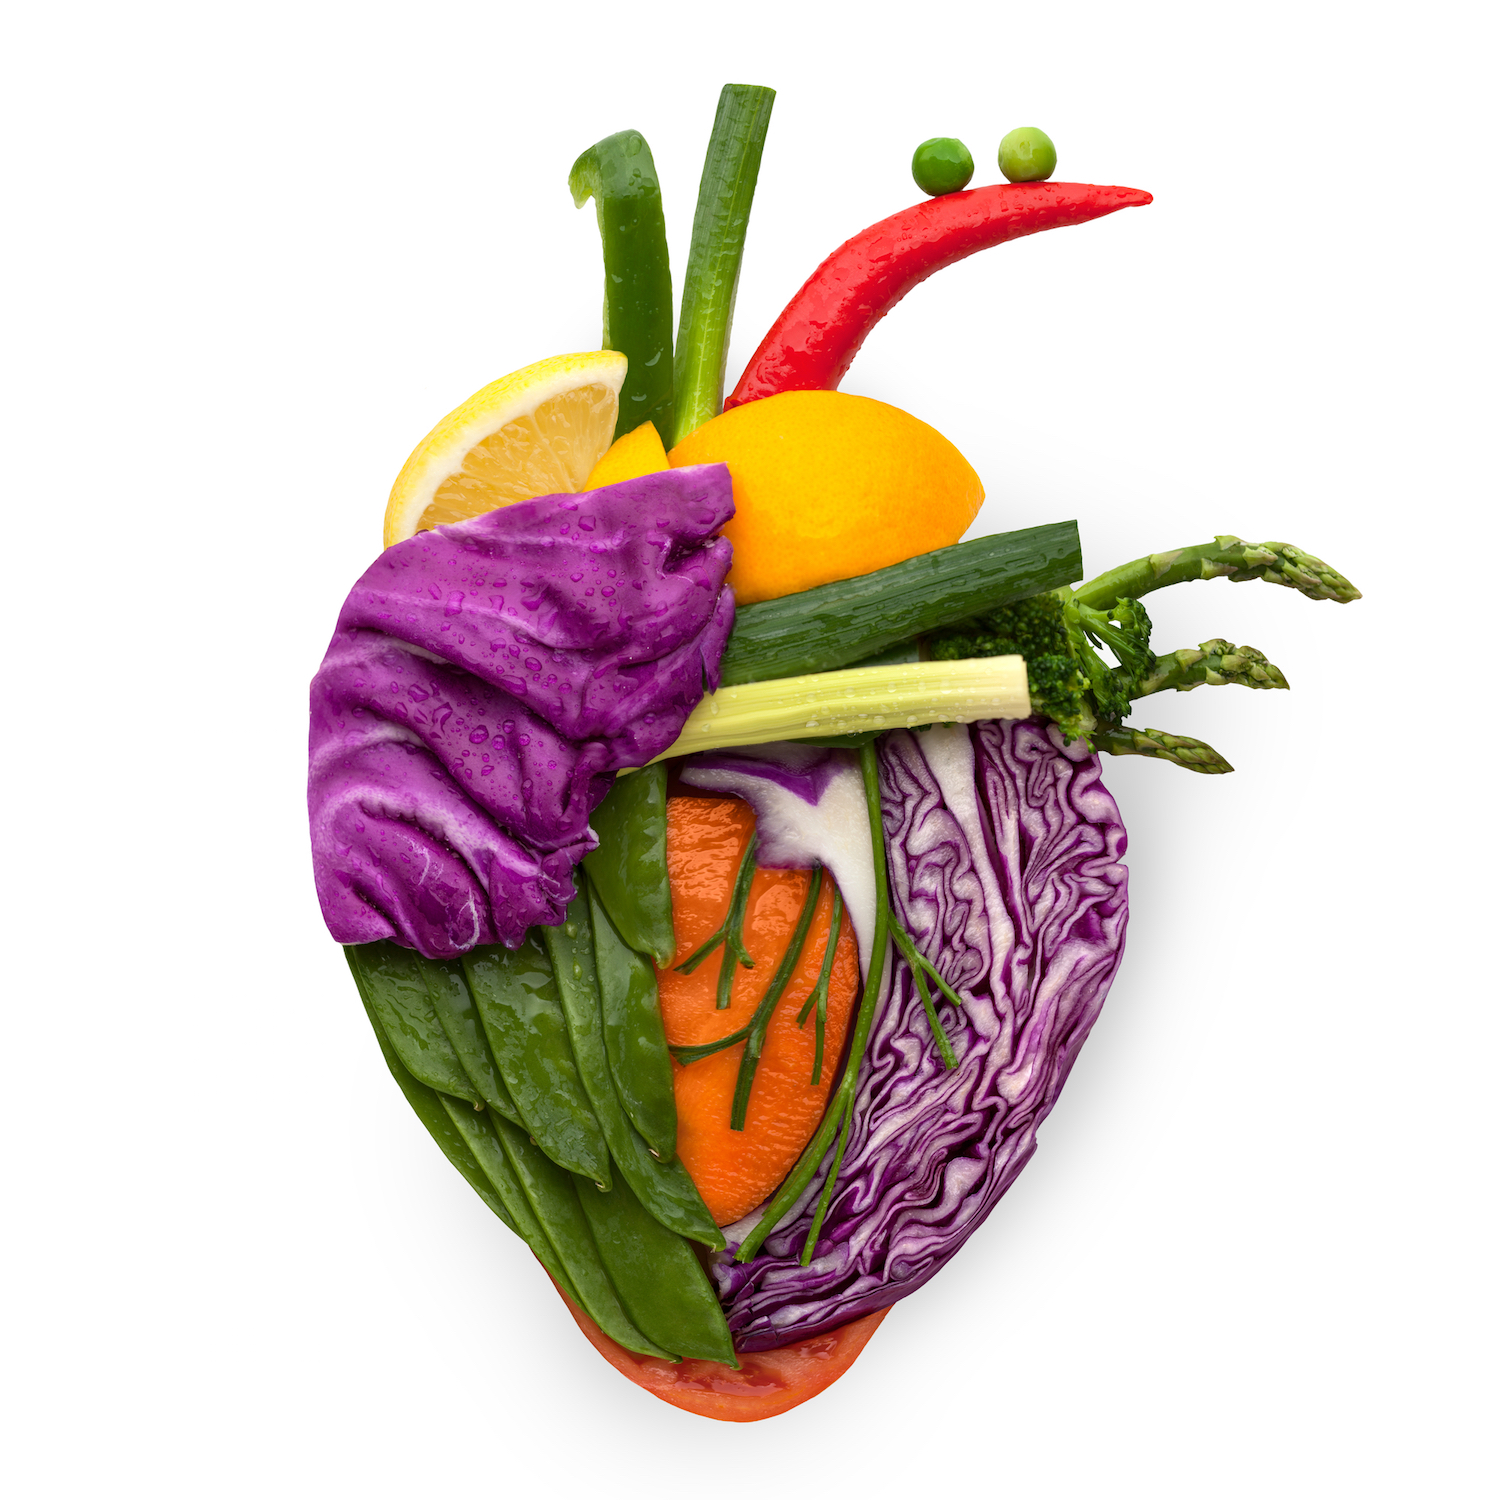 Сердце из овощей